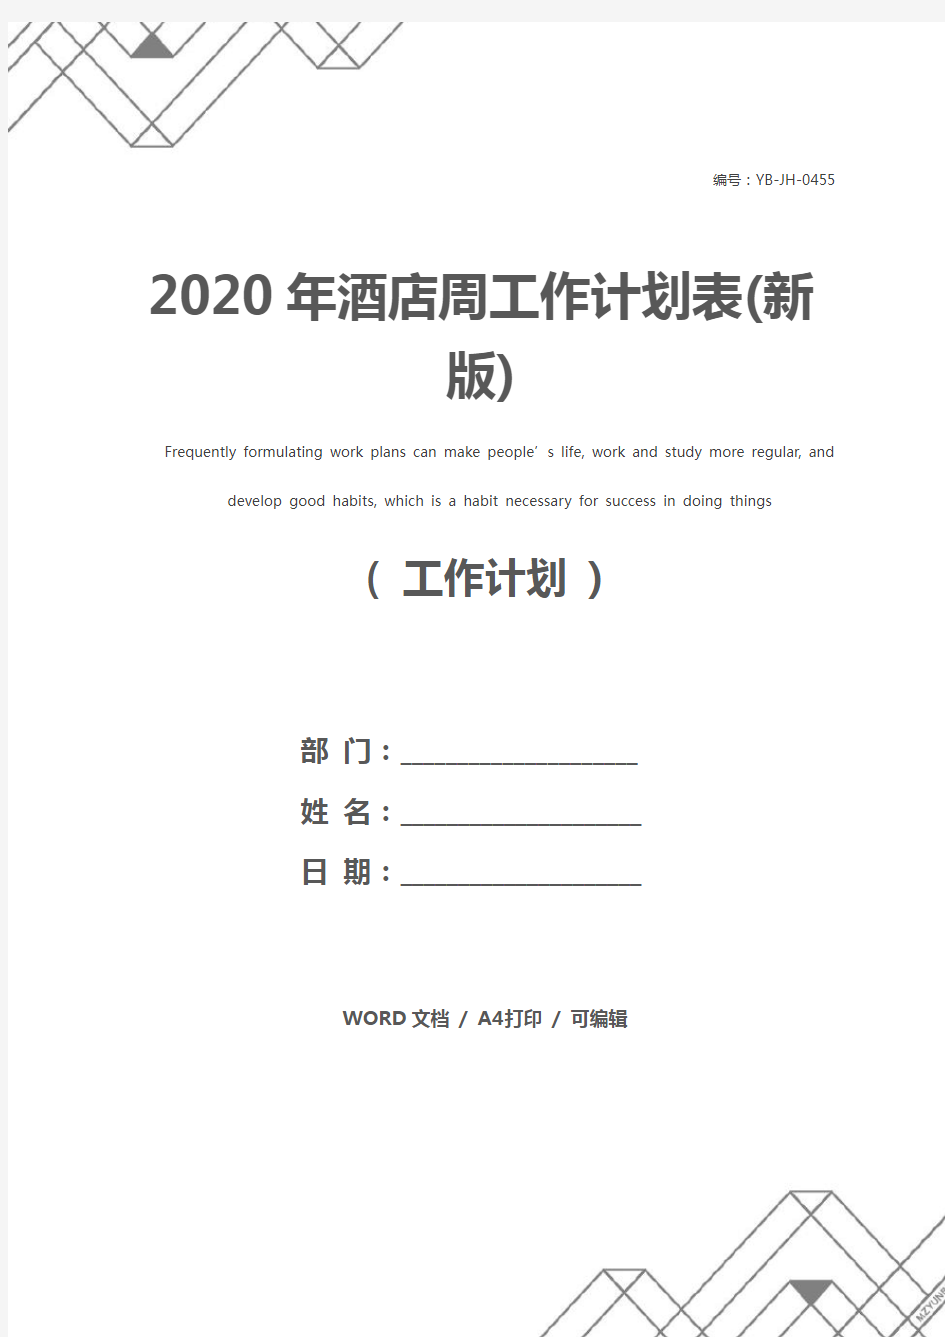 2020年酒店周工作计划表(新版)